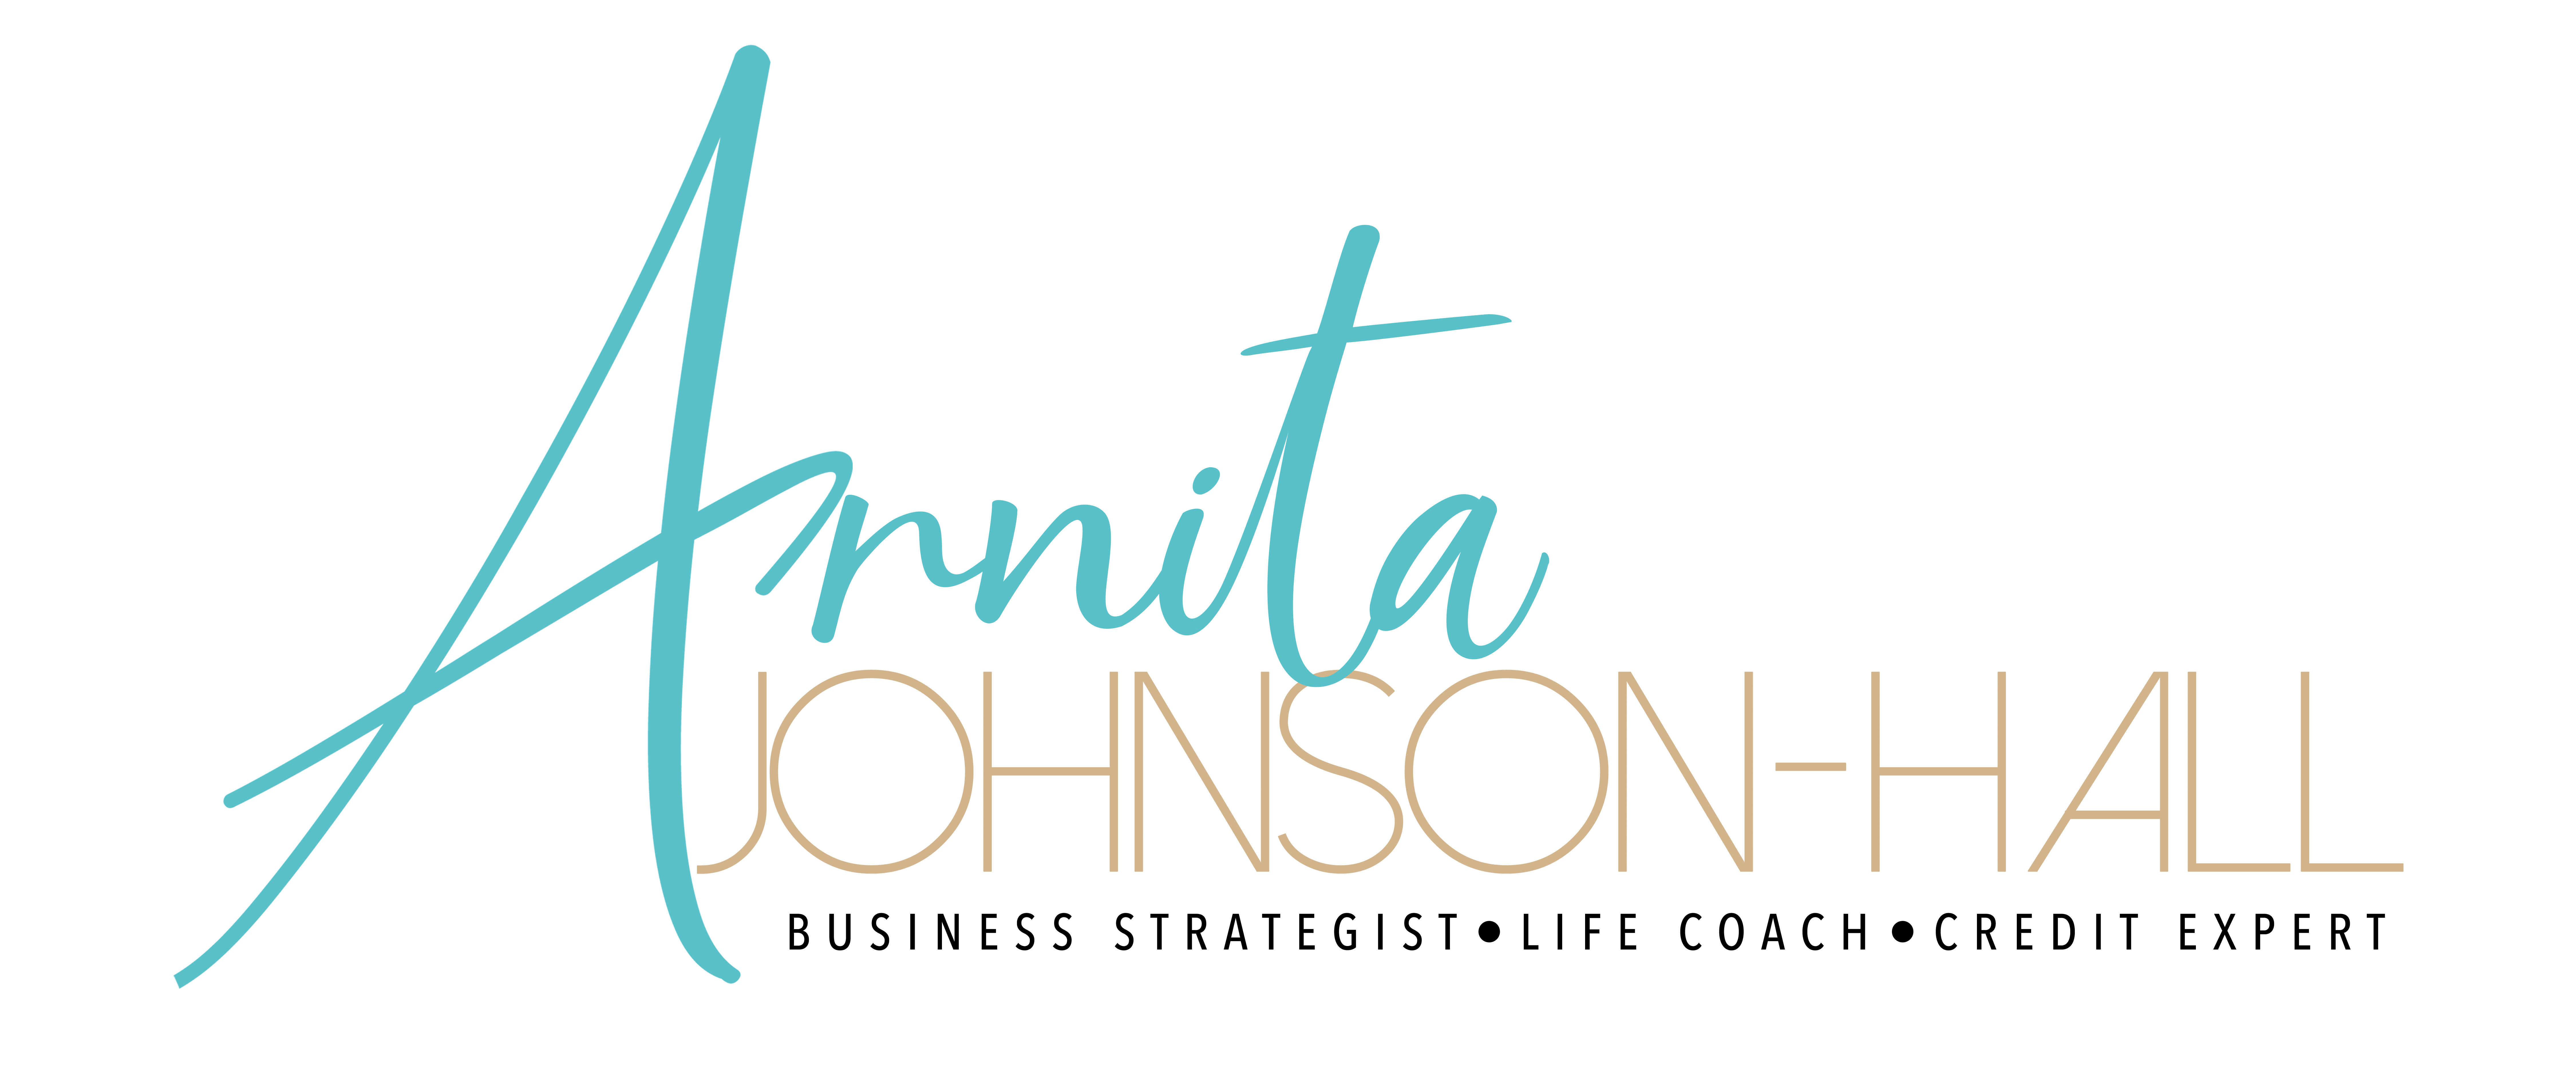 Arnita Johnson-Hall